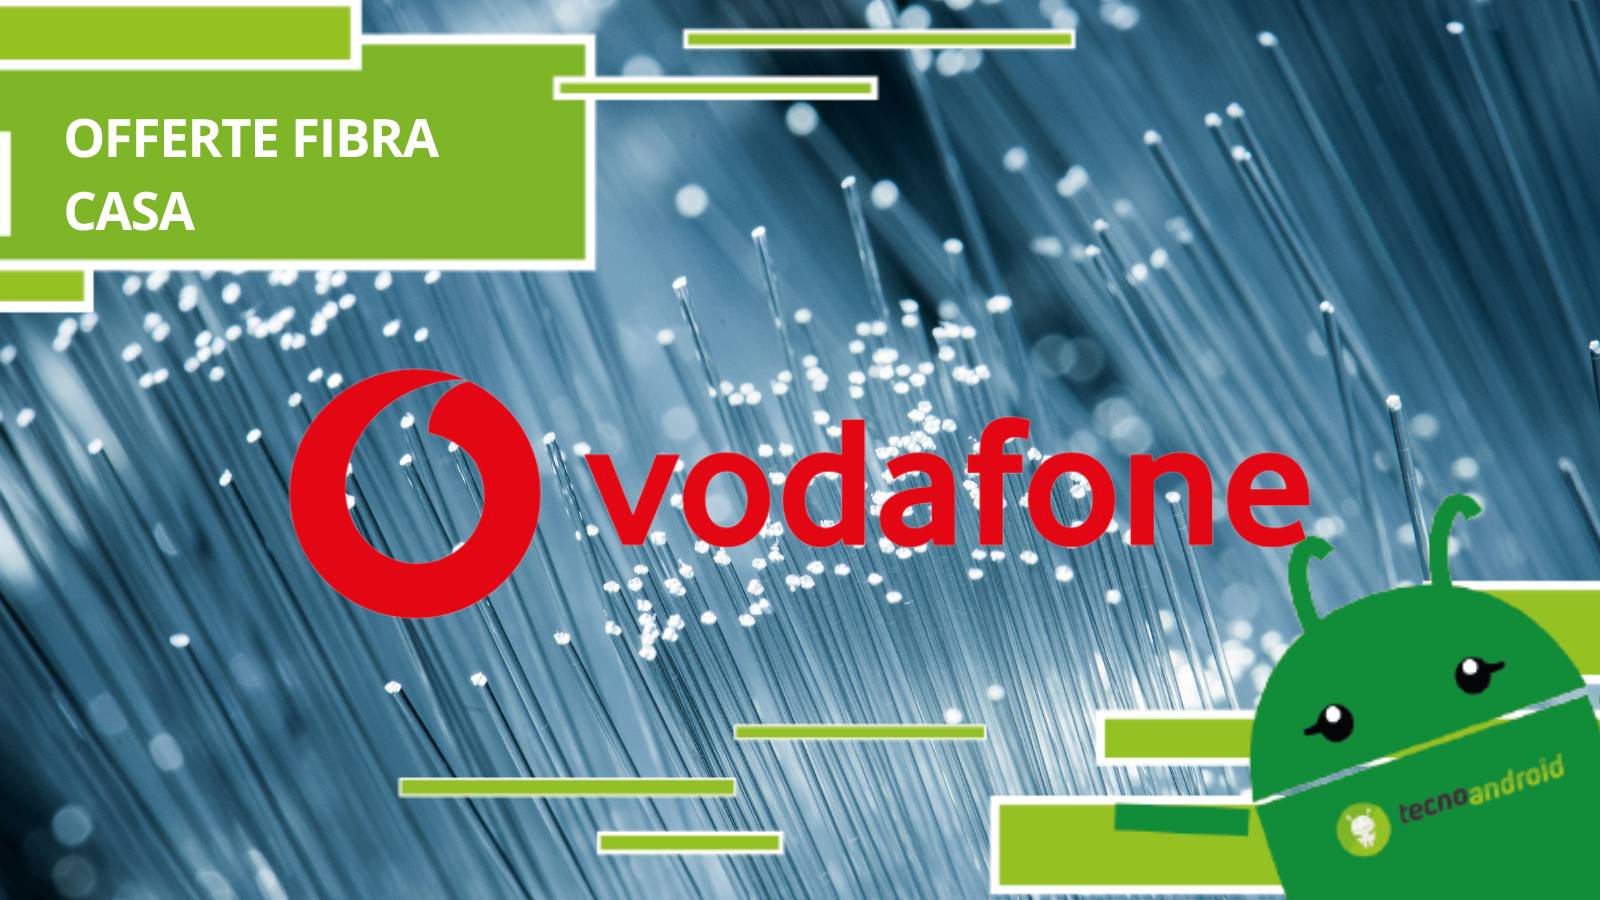 Vodafone, se sei alla ricerca di offerte per Fibra ottica dai un'occhiata a queste